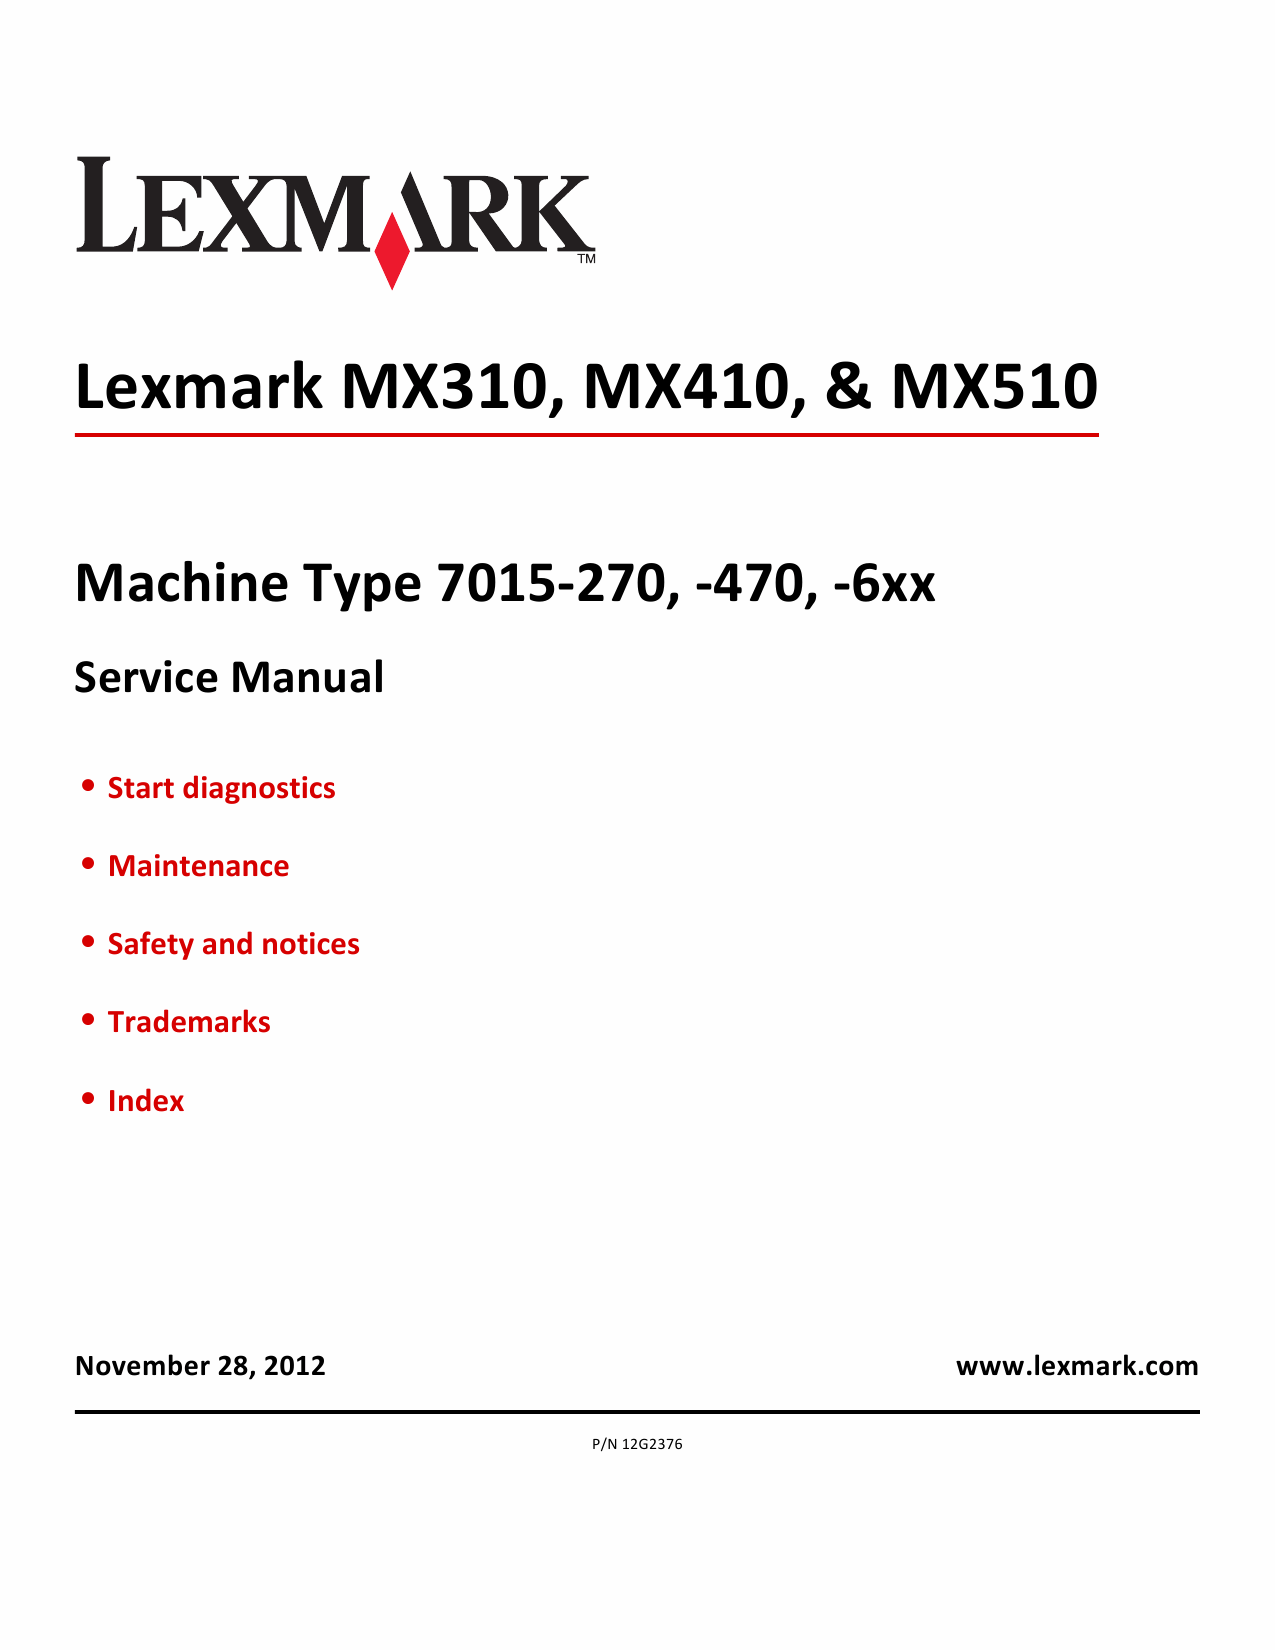 Lexmark MX MX310 MX410 MX510 7015 Service Manual-1